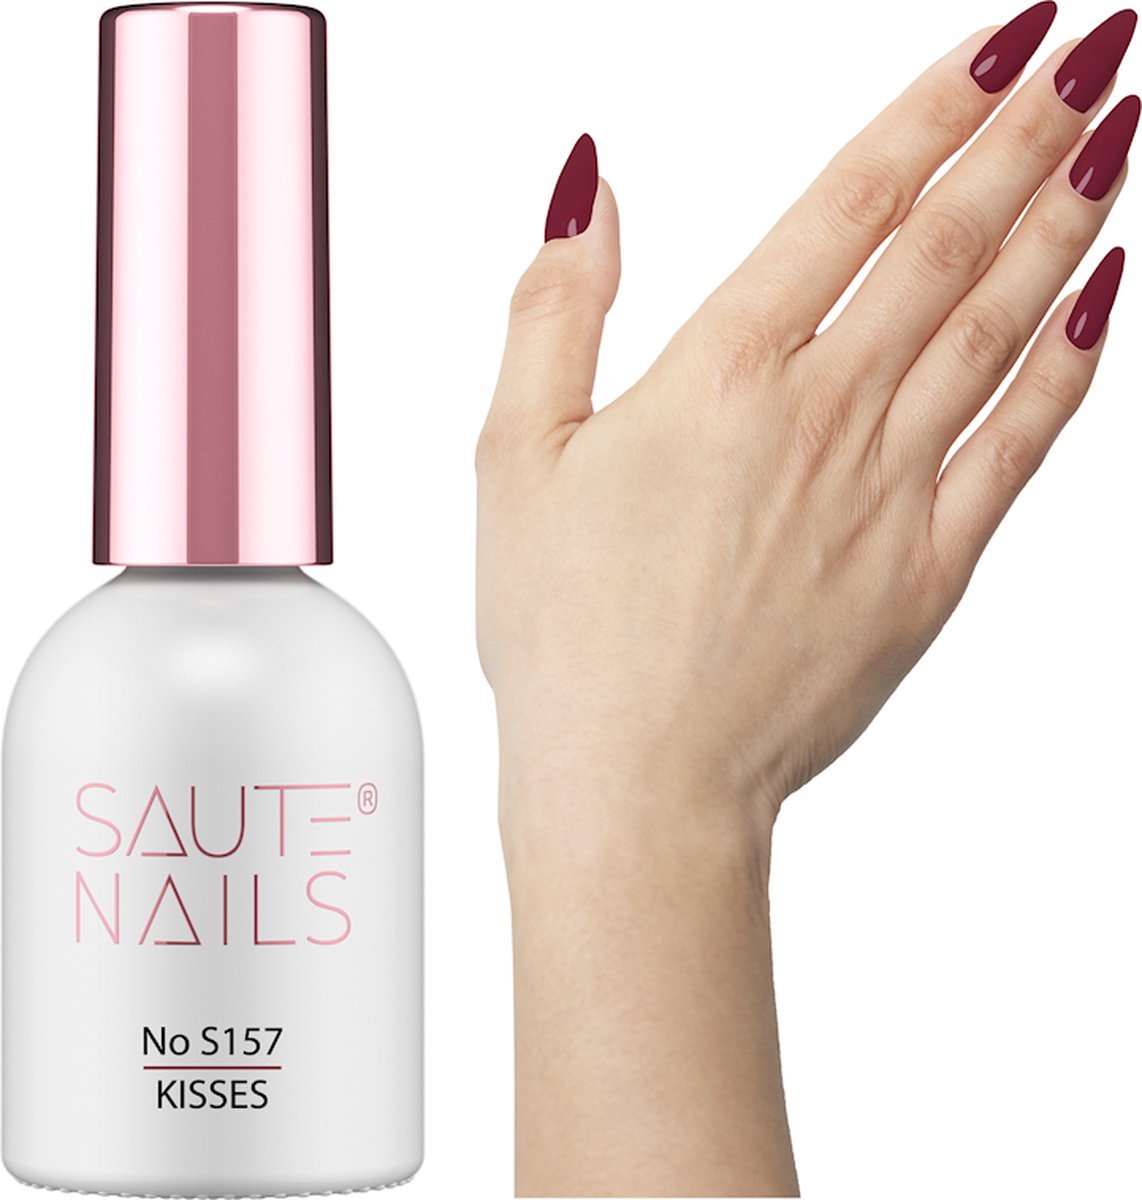 SAUTE Nails Rood UV/LED Gellak 8ml. - S157 Kisses